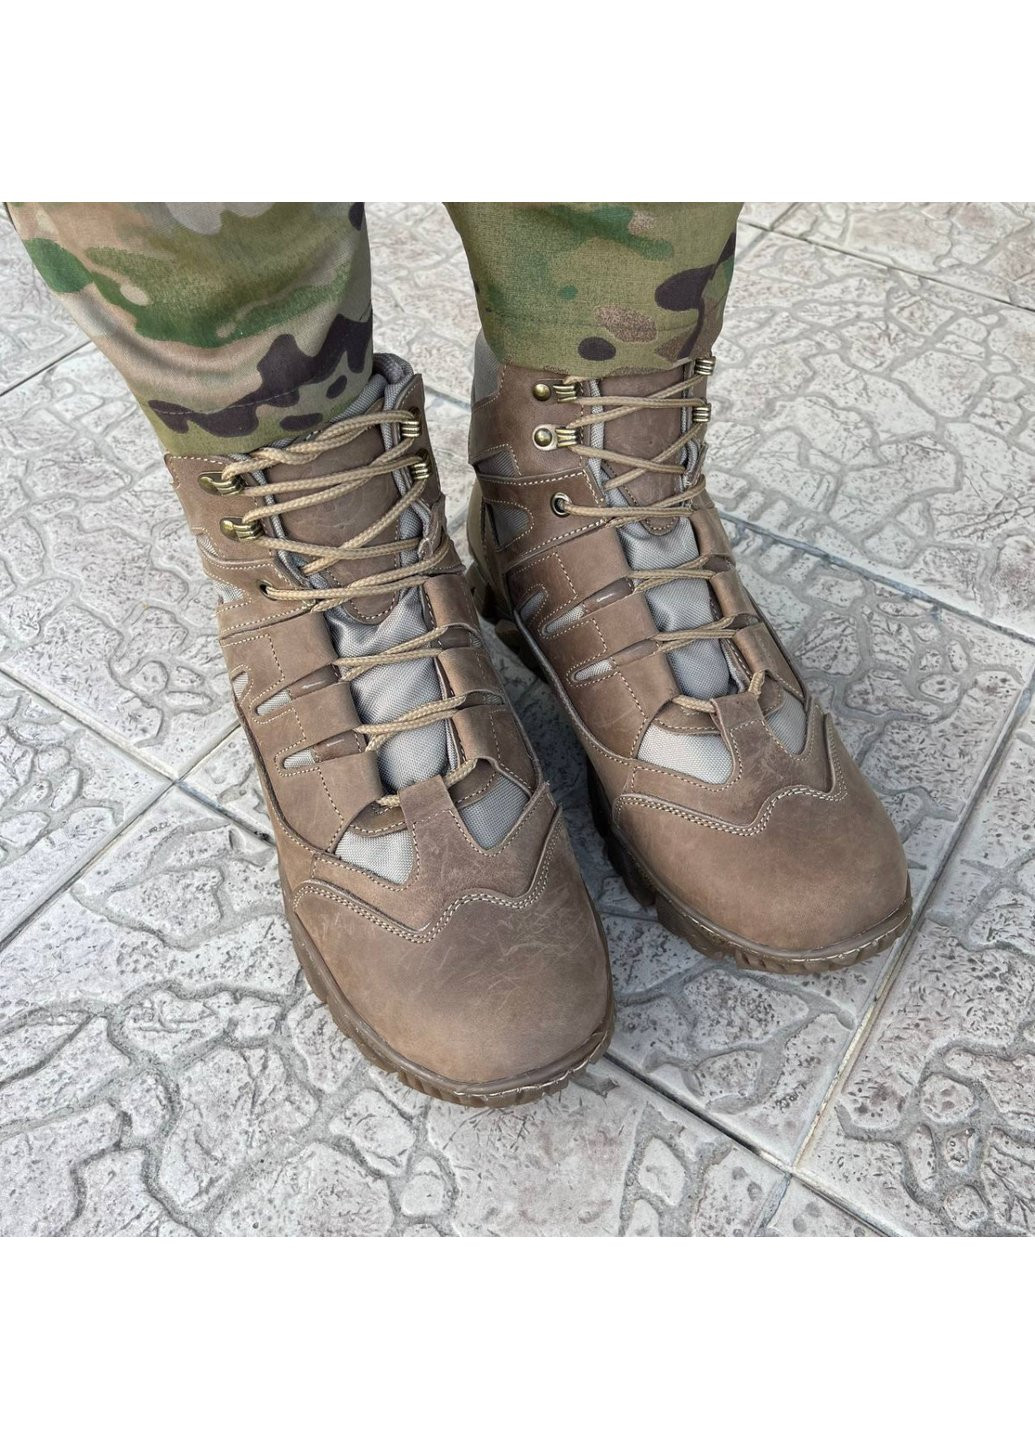 Коричневые осенние ботинки военные тактические всу (зсу) 7529 44 р 29 см коричневые Power